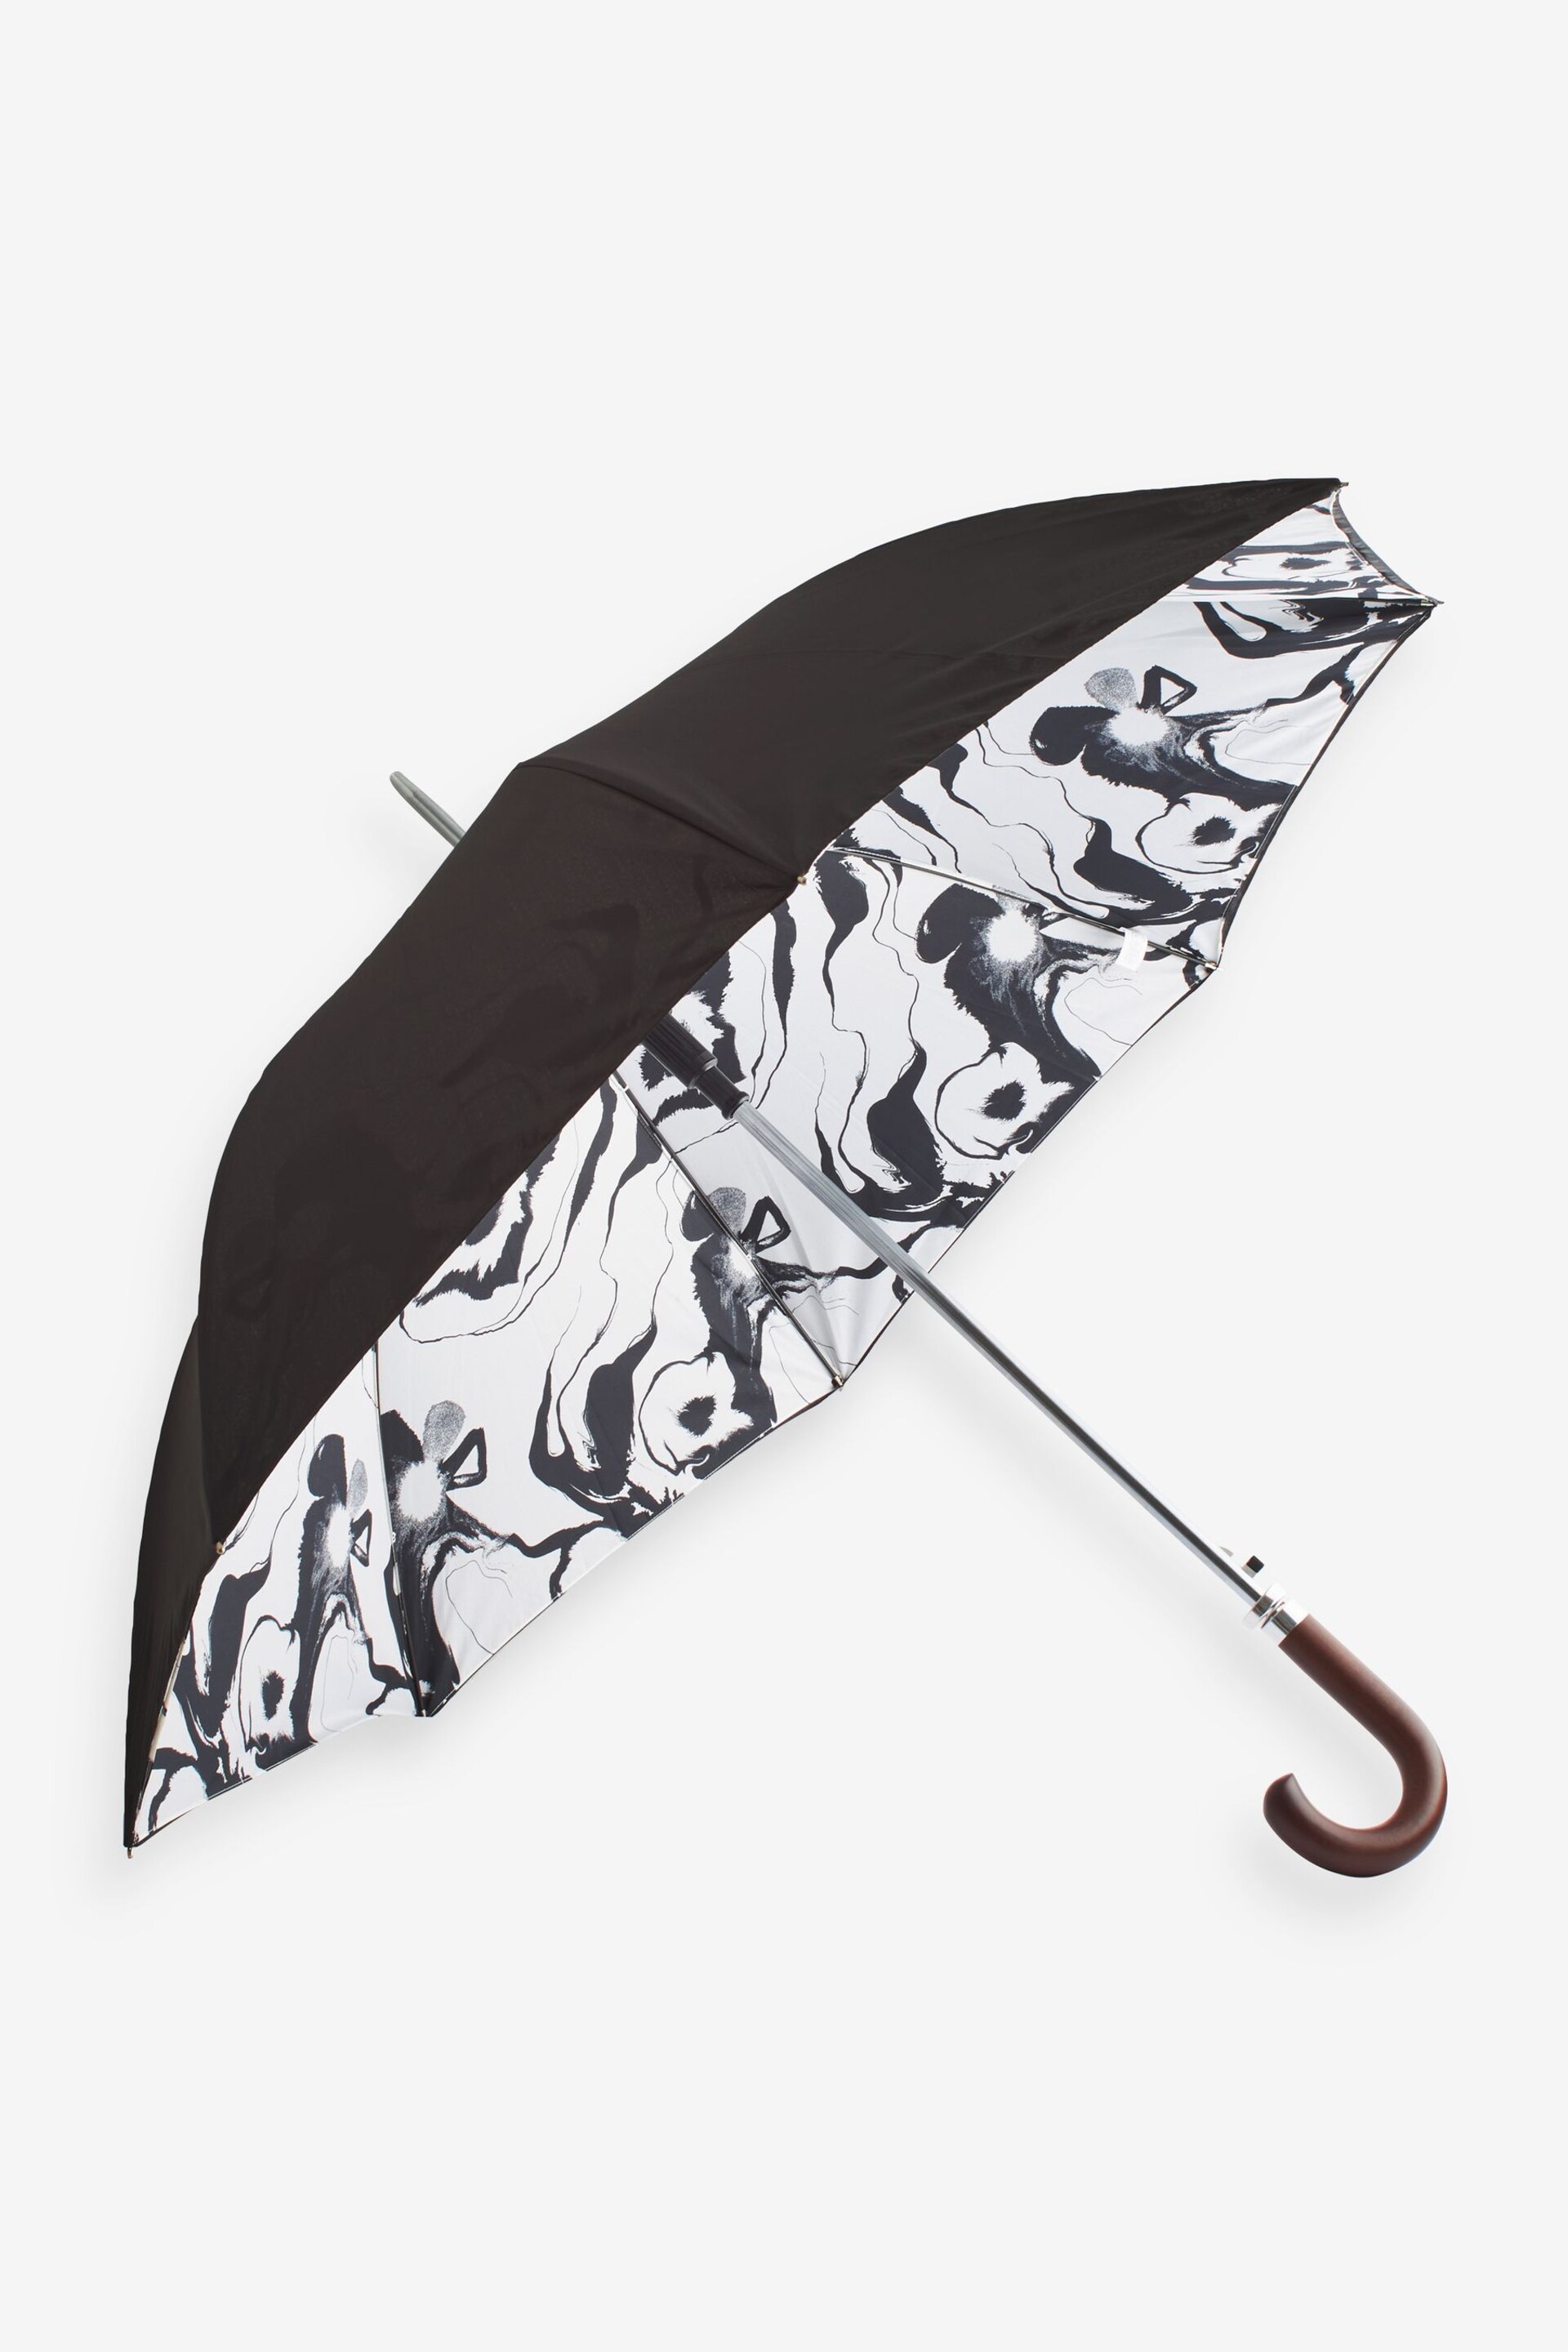 Monochrome N. Premium Umbrella - Image 1 of 4